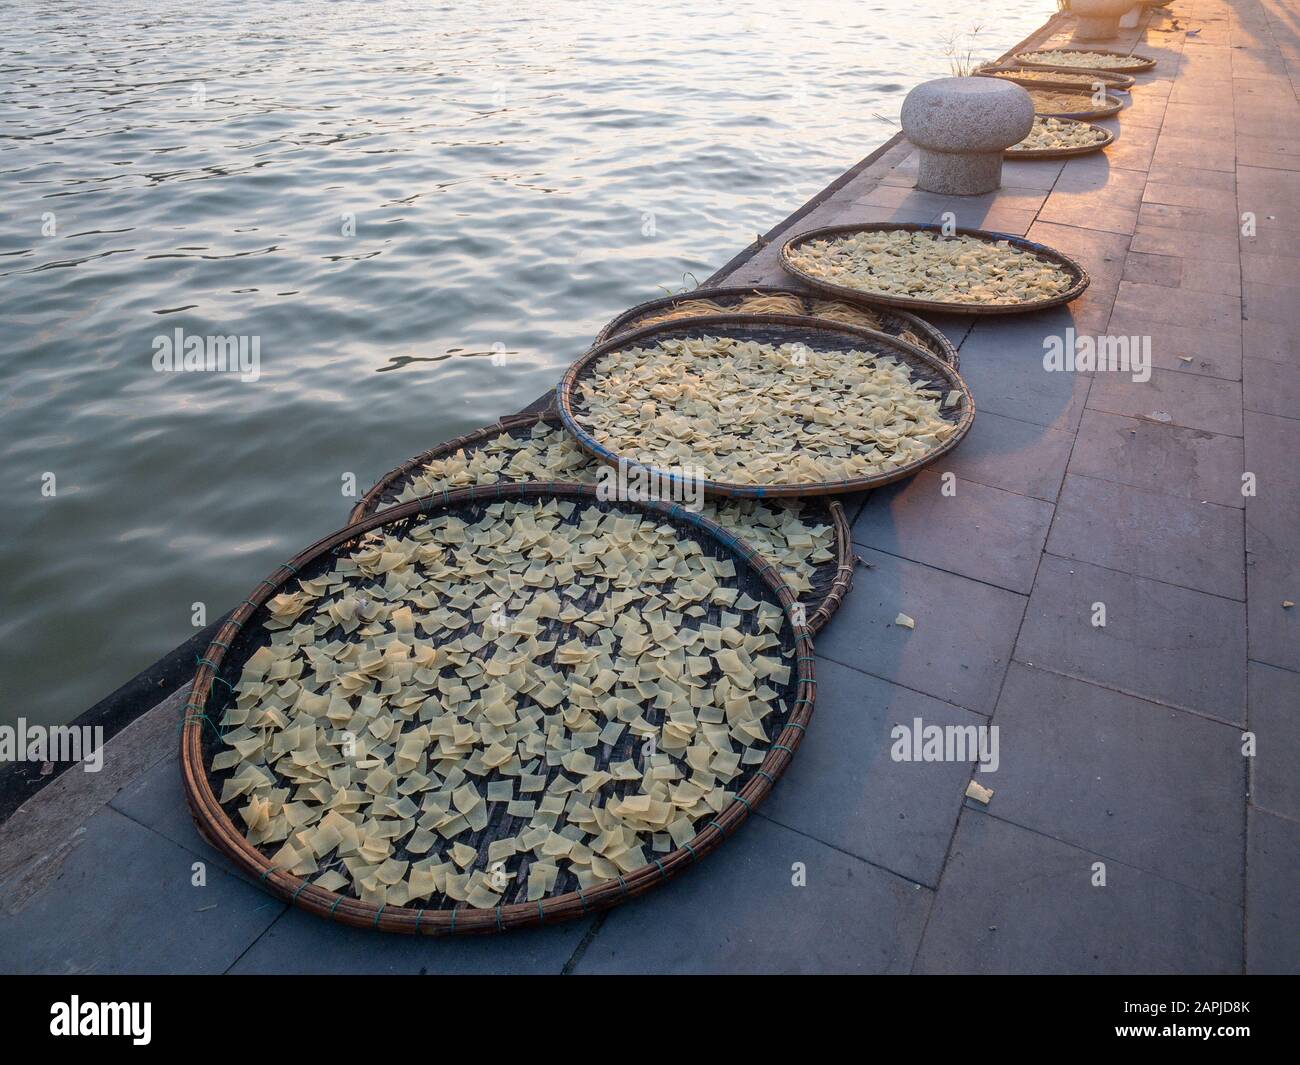 Cao Lau Noodle trocknet in Sonne am Flussufer in Hoi An Der Altstadt, Vietnam. Cao Lau wird aus speziellem Brunnenwasser und einem Gericht hergestellt, das nur in Hoi An zu finden ist Stockfoto